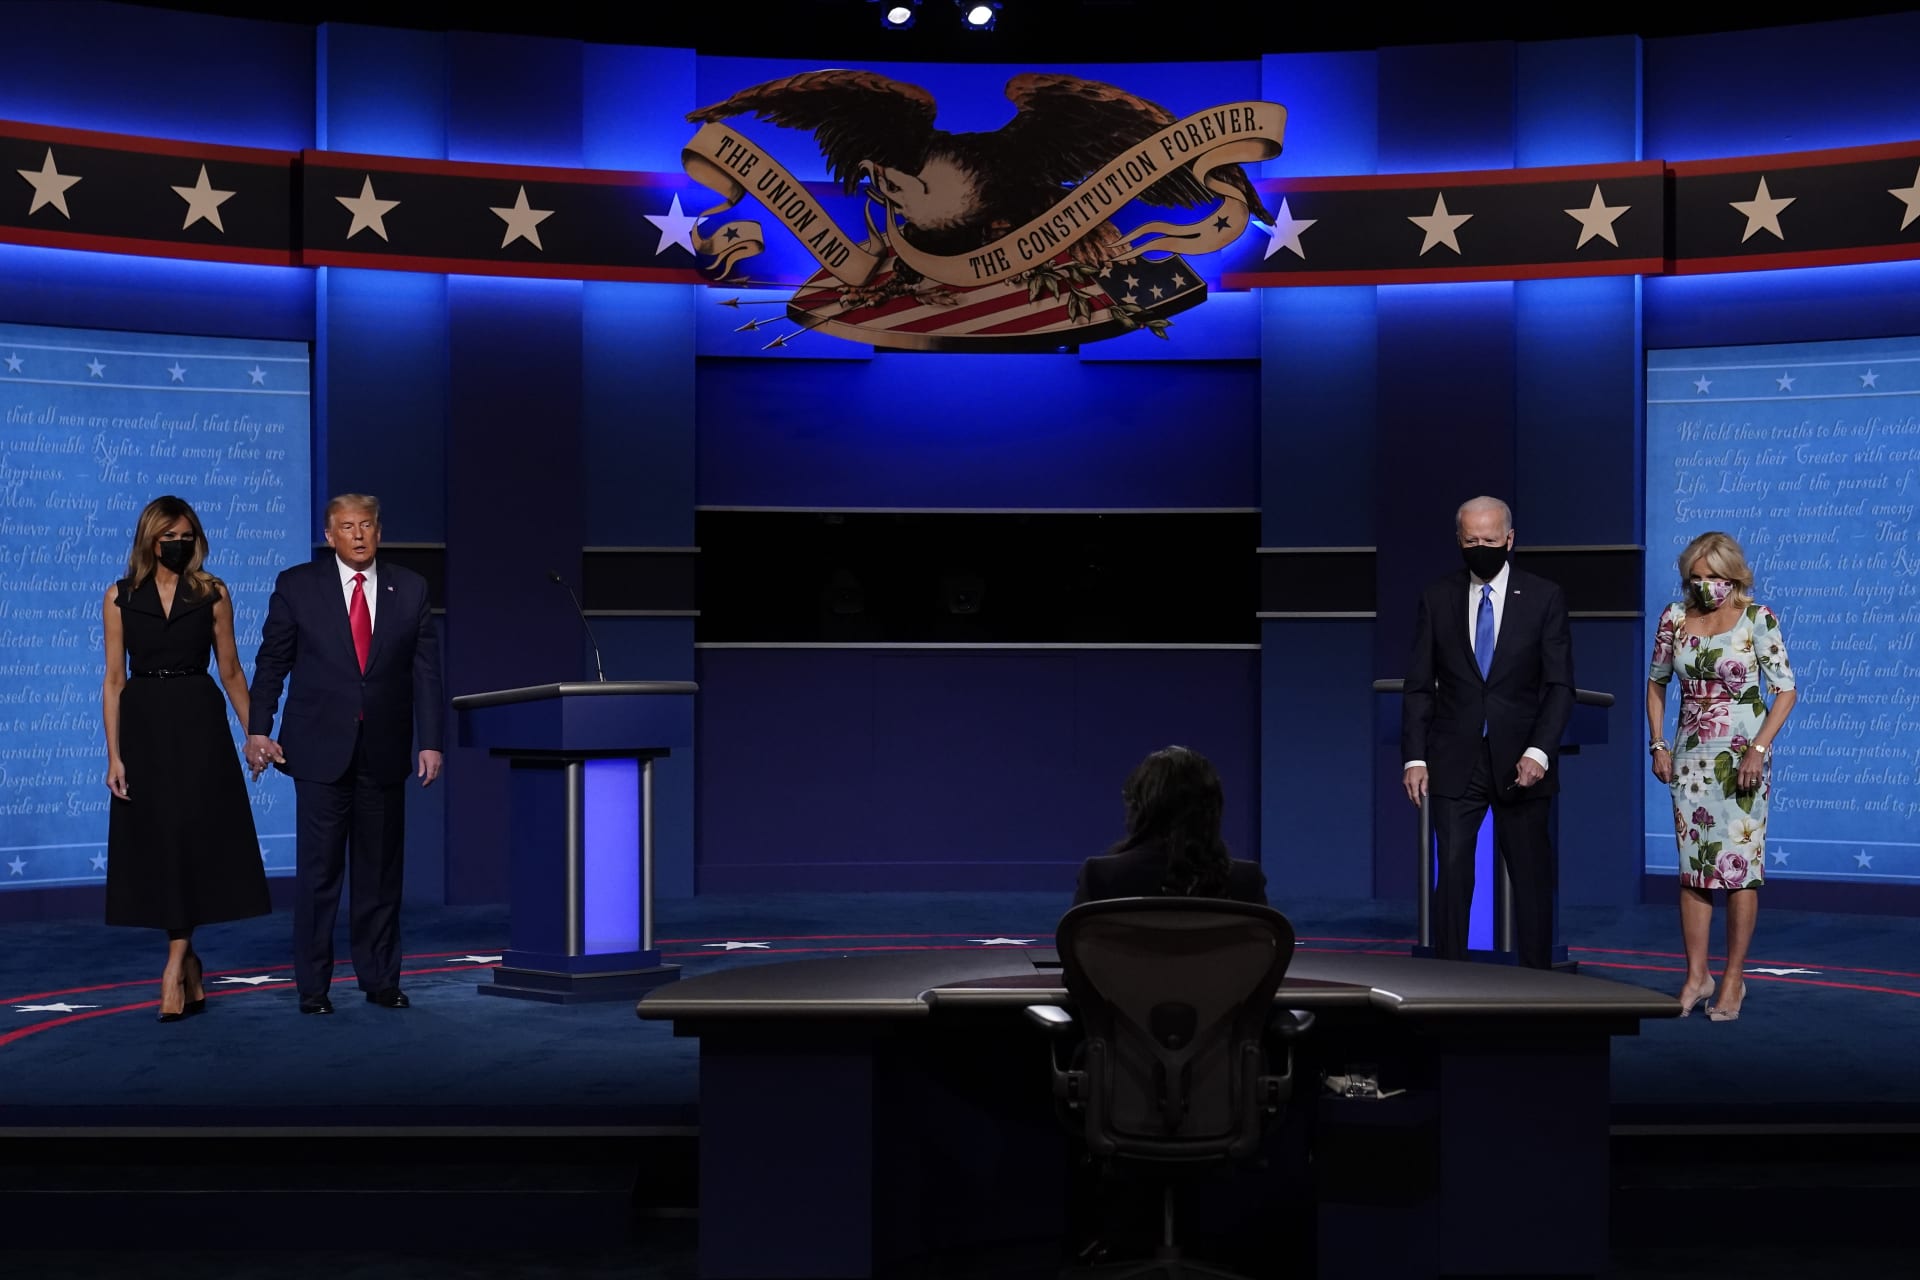 Která z dam se na předvolební debatu svého manžela lépe oblékla? Melania Trump nebo Jill Buden.